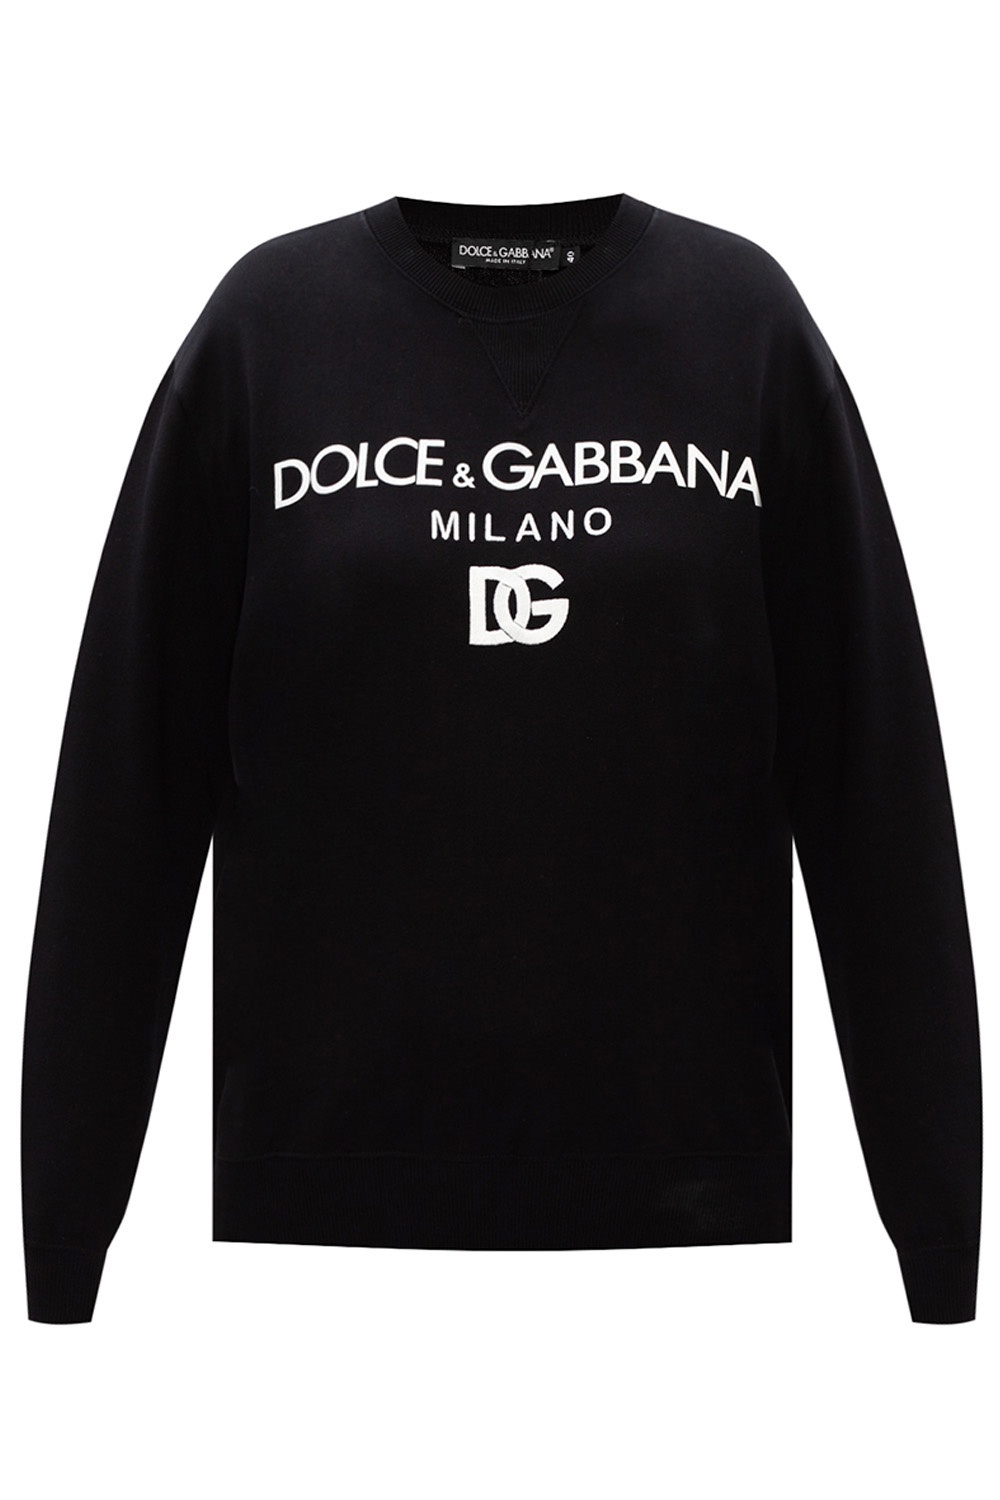 dolce and gabbana logo sweatshirt